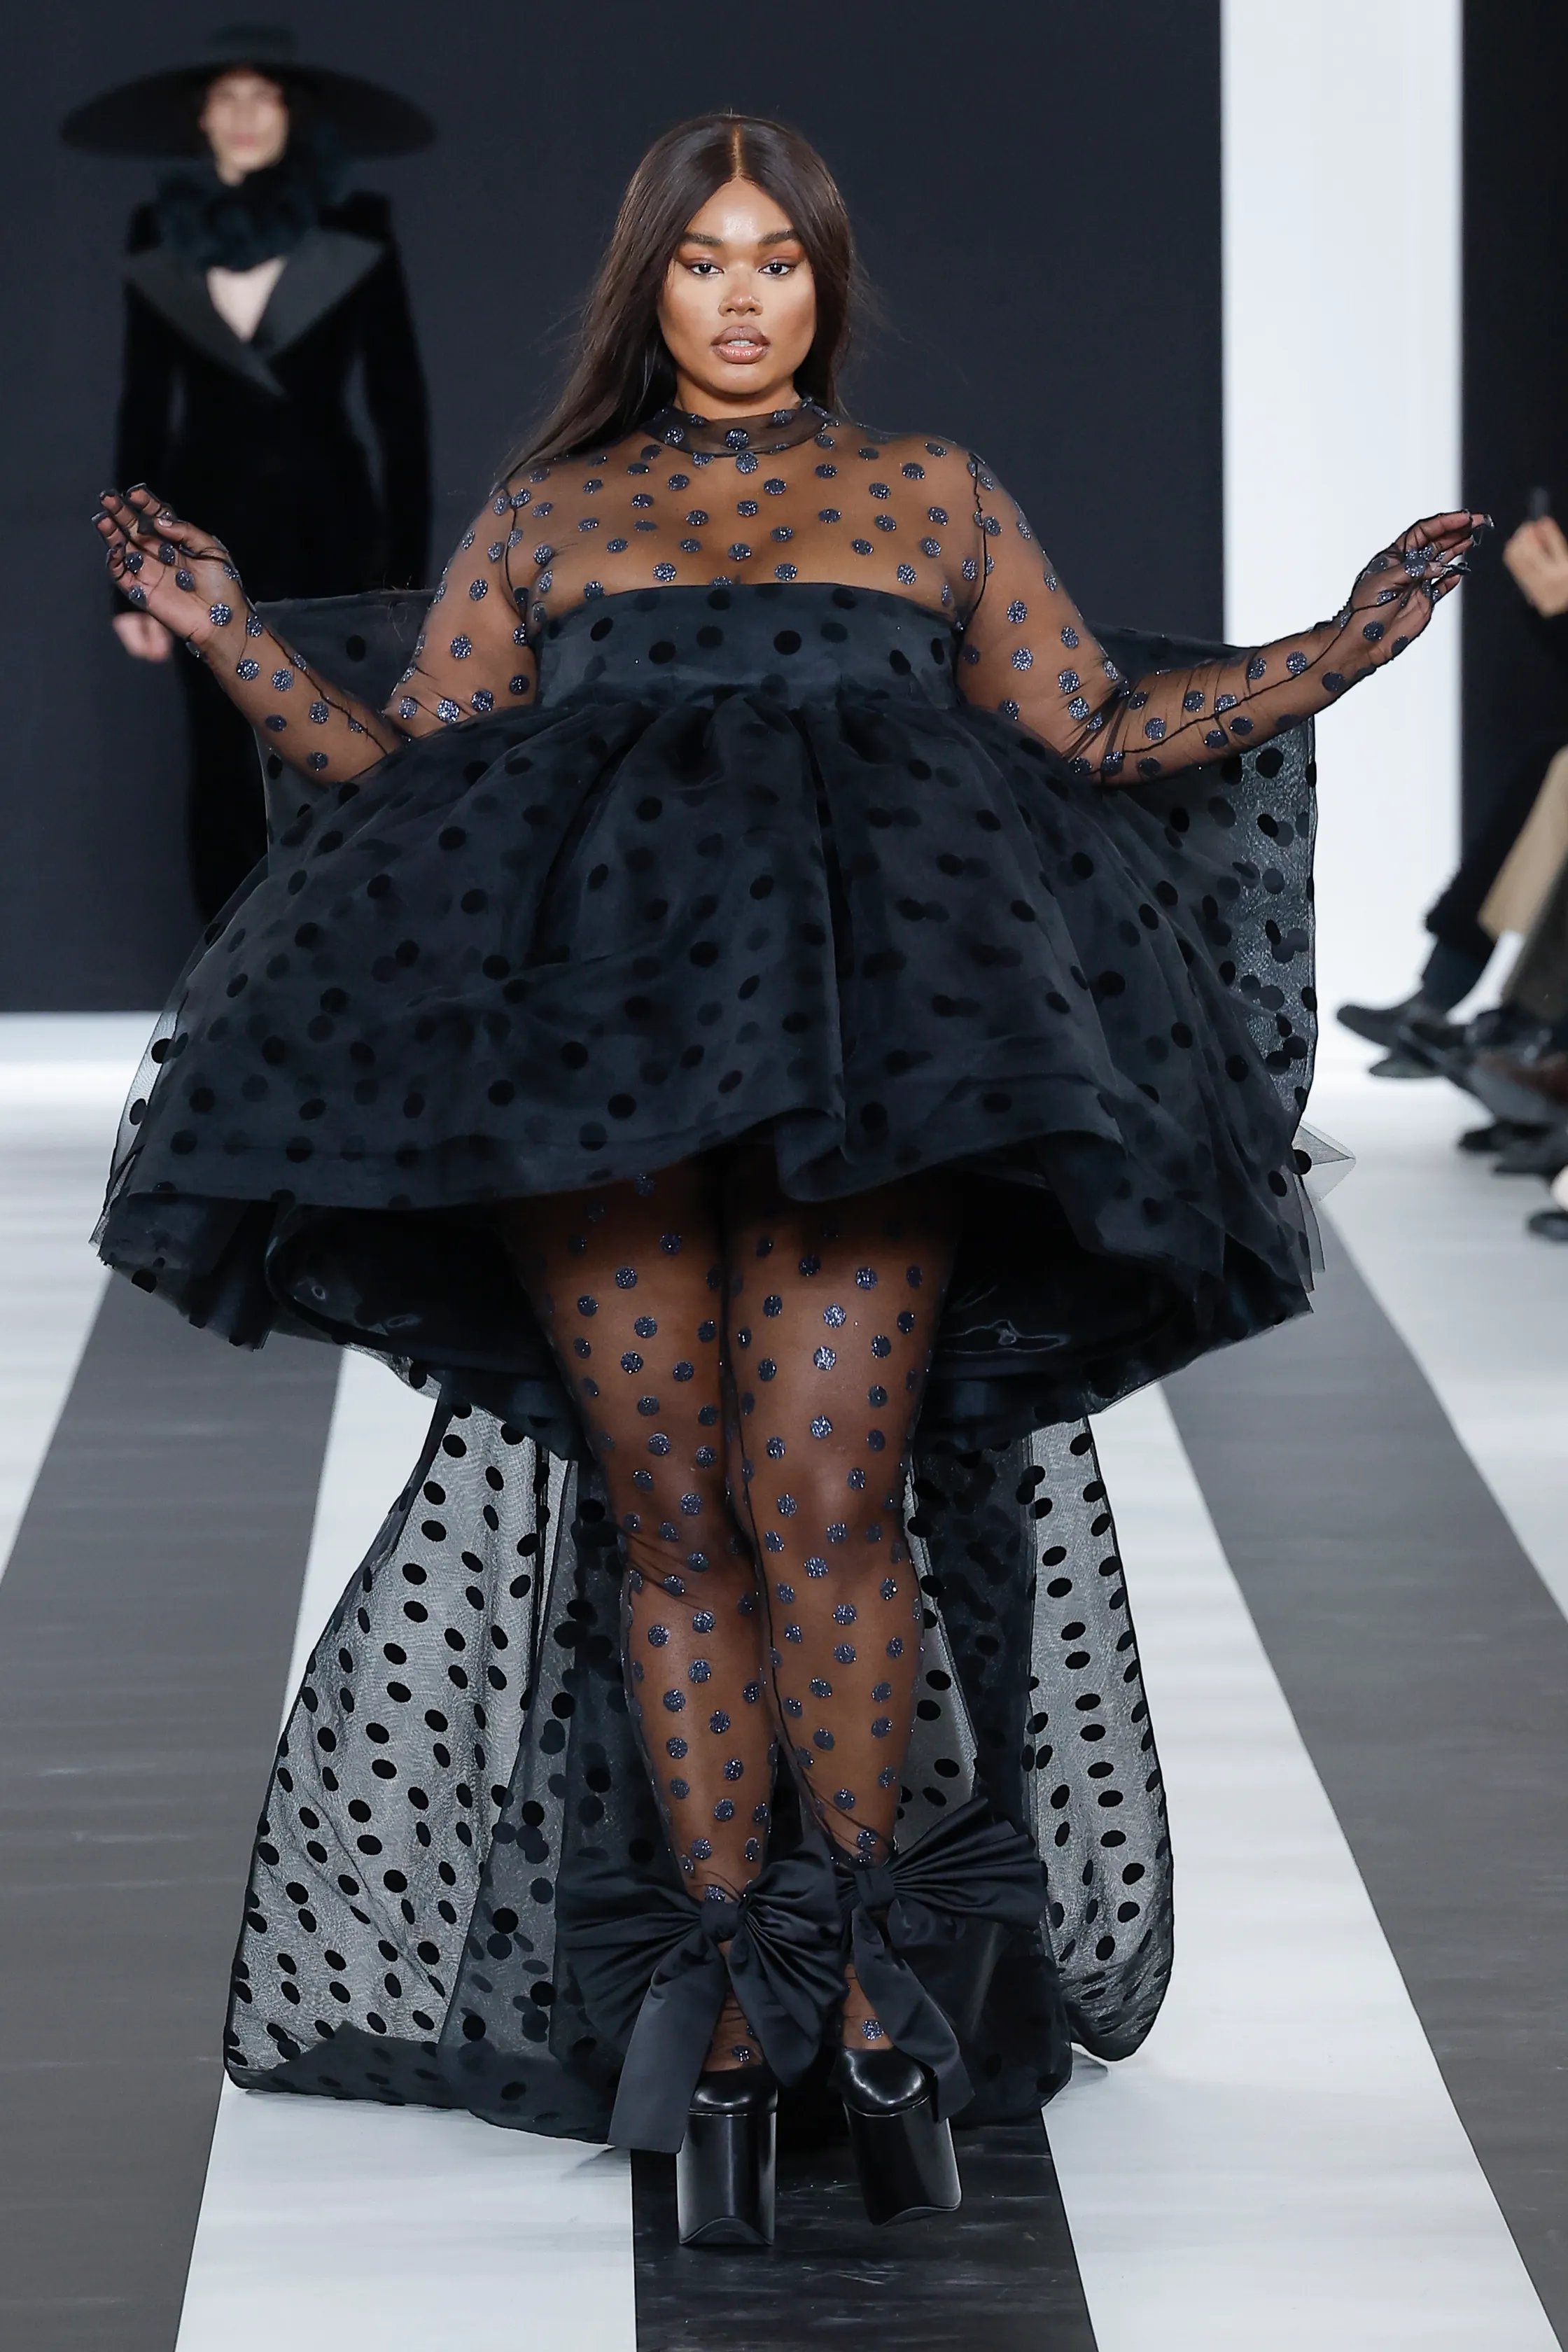 Платья-обманки, дебют Харриса Рида в <strong>Nina Ricci</strong> и роботы. Ключевые события пятого дня Недели моды в Париже